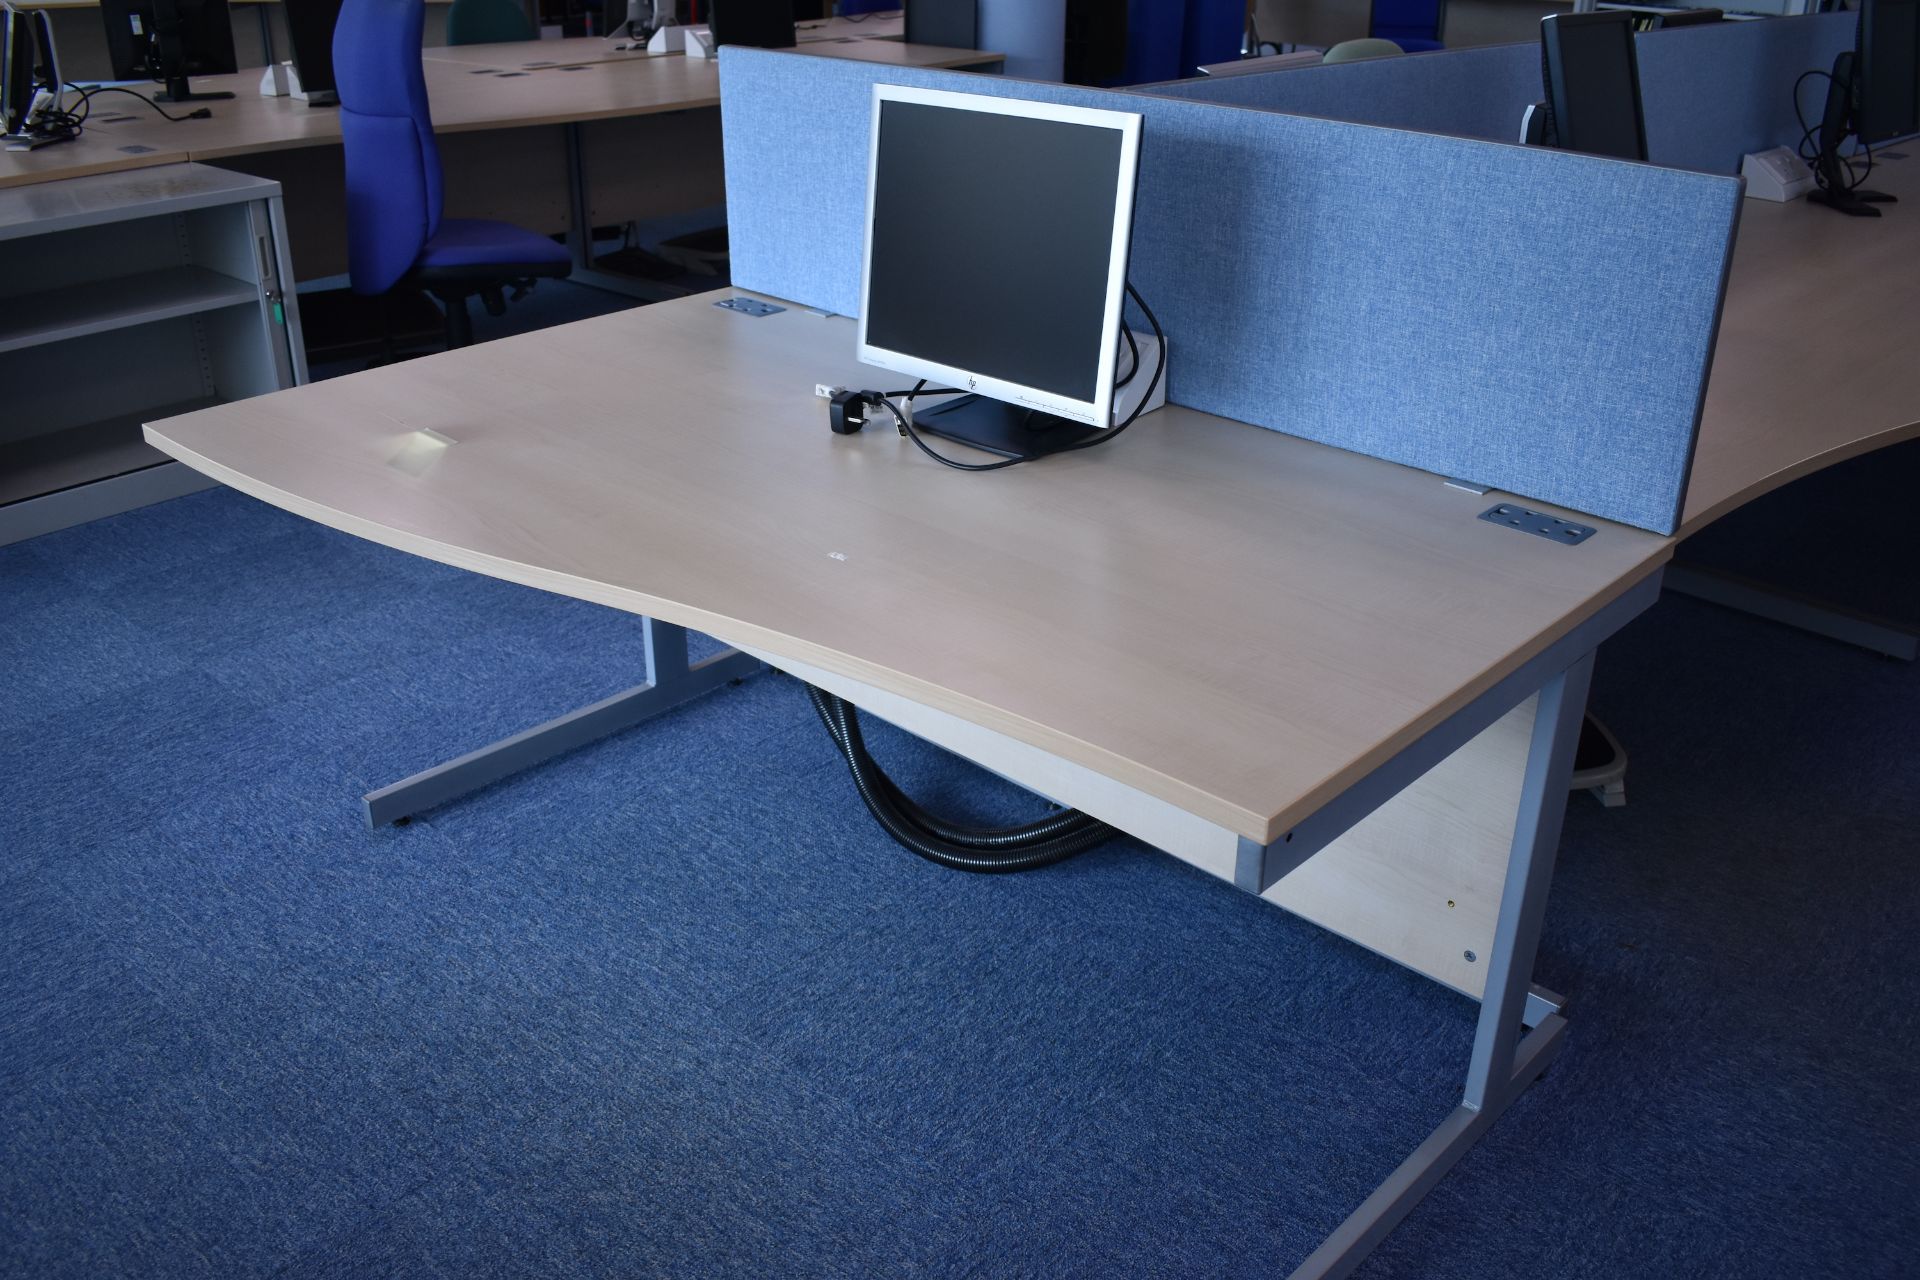 W1600x800 Hardwired Desk LH x4 x RH x3, Desk Screens x4 Task Chair x3, Footrest x2, Monitors x7 - Image 2 of 9